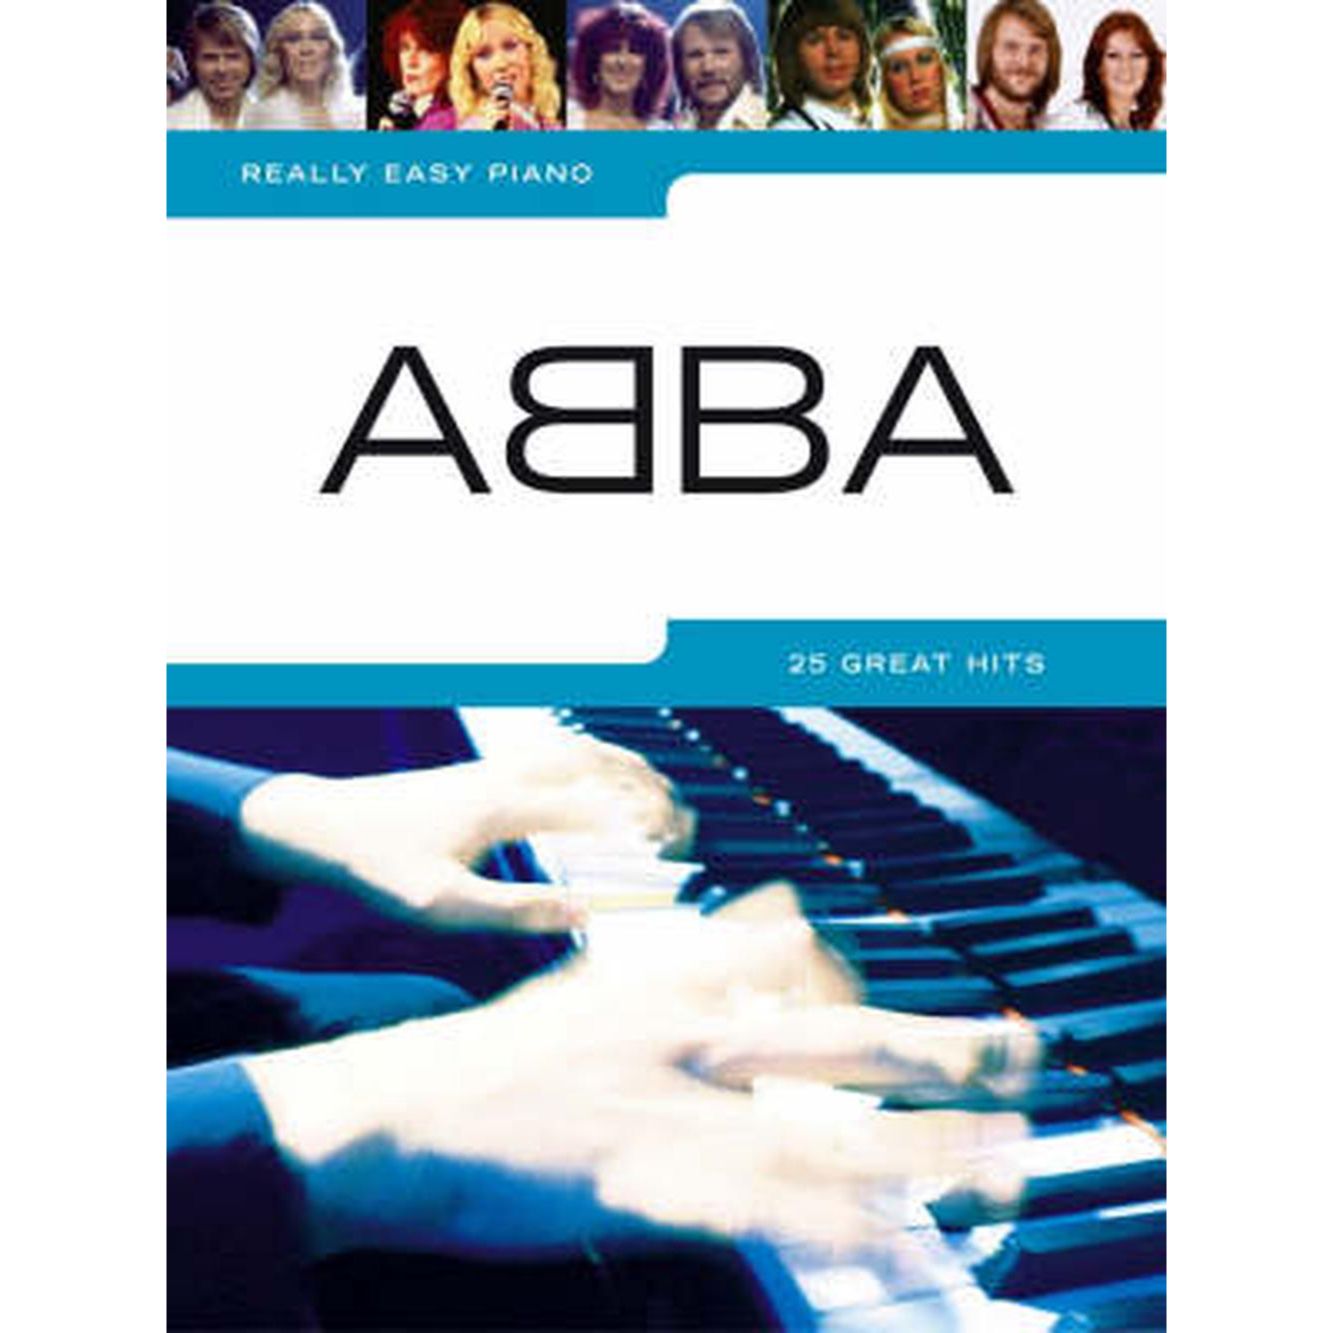 Really Easy Piano - ABBA (25 Great Hits)